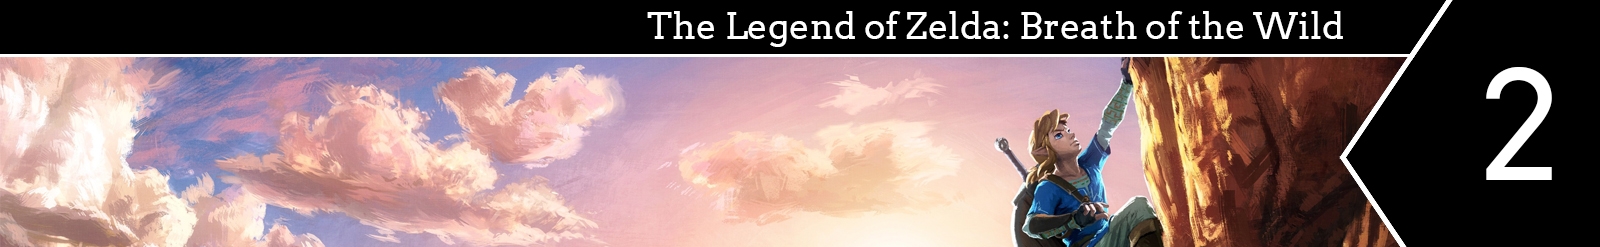 2_The Legend of Zelda- Breath of the Wild